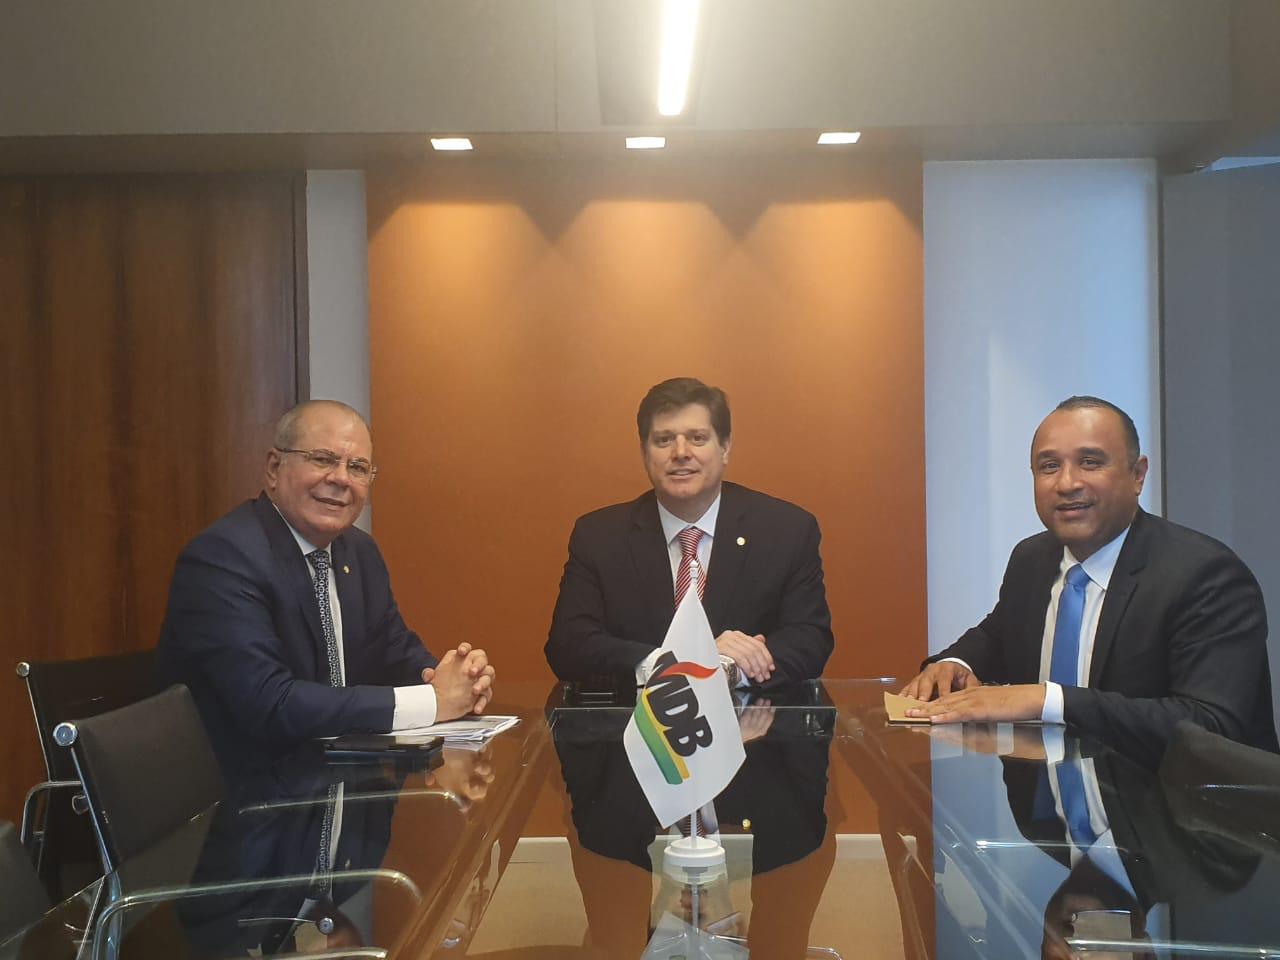 Roberto Costa e Hildo Rocha se reúnem com presidente nacional do MDB, Baleia Rossi.